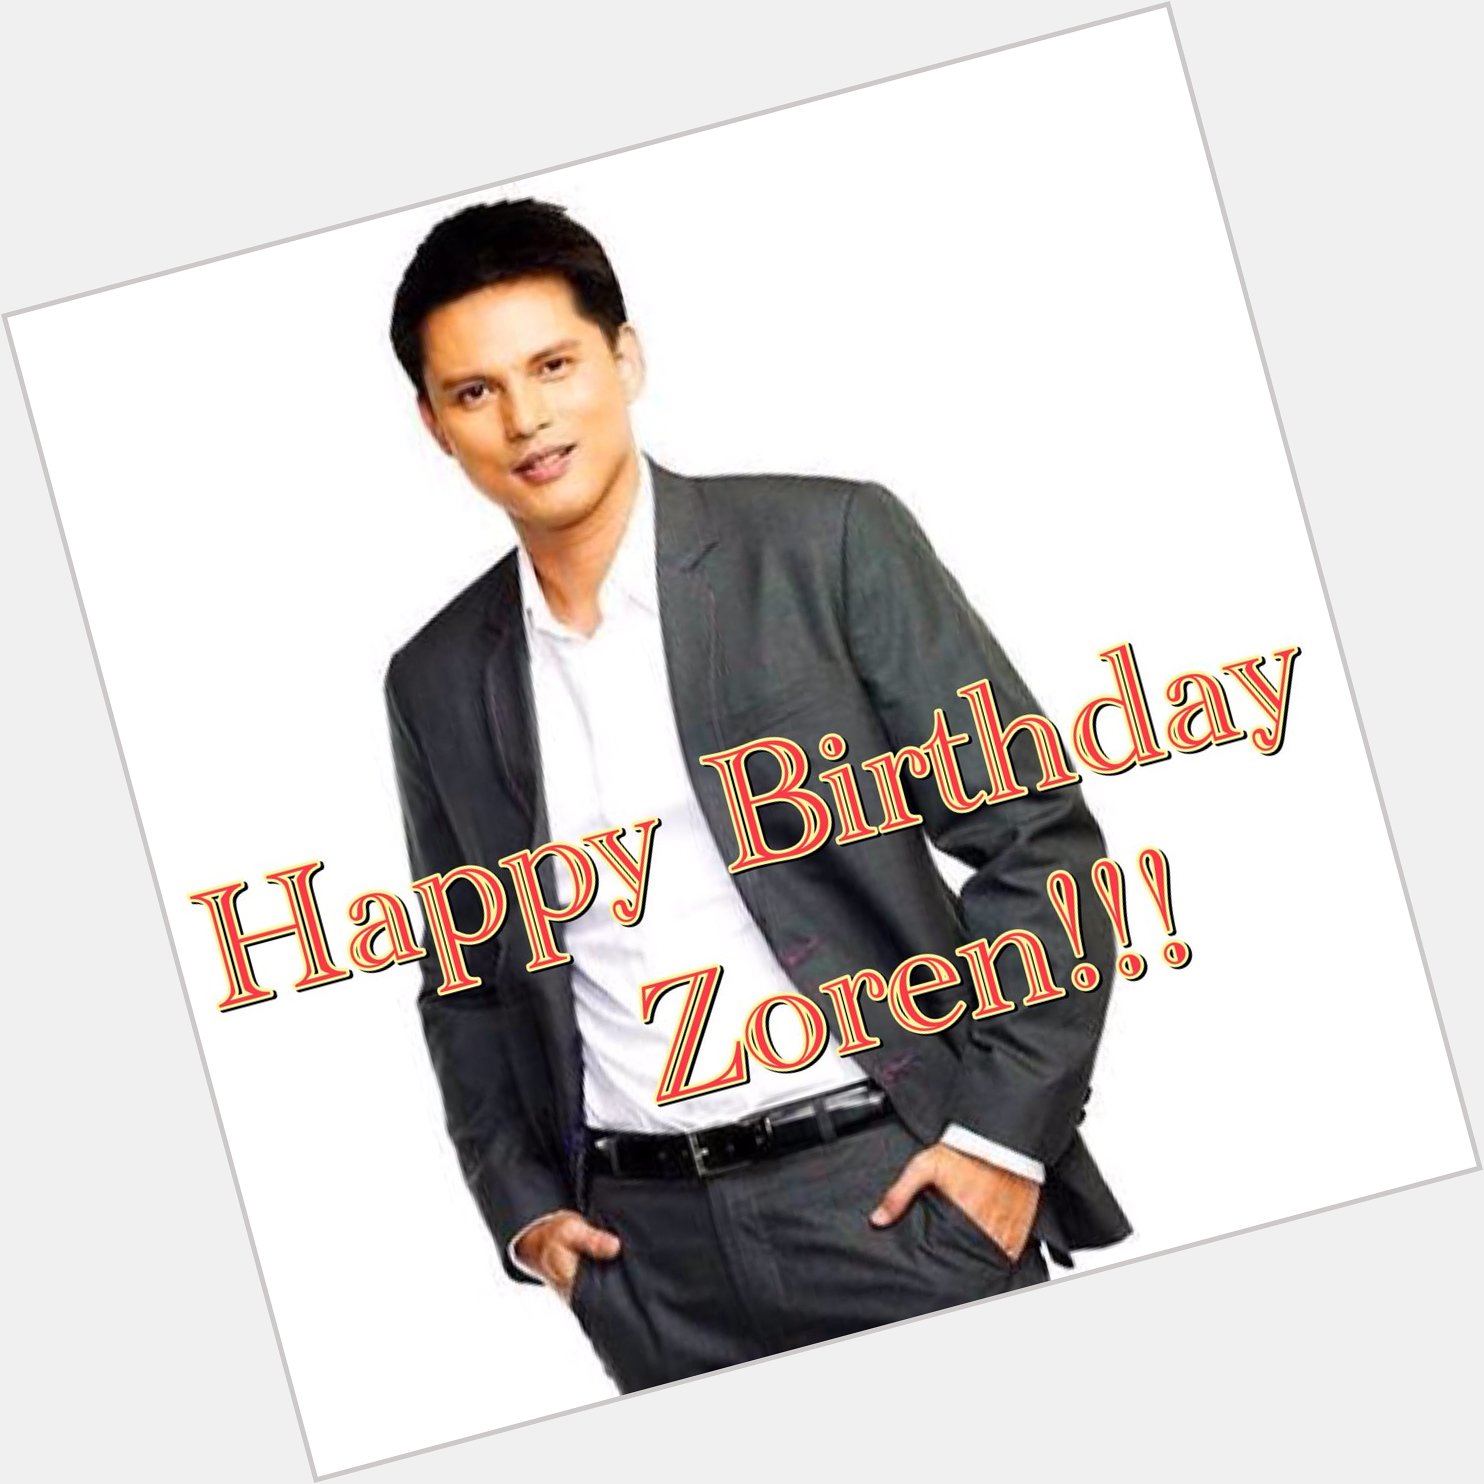 Happy Birthday Zoren Legaspi. 